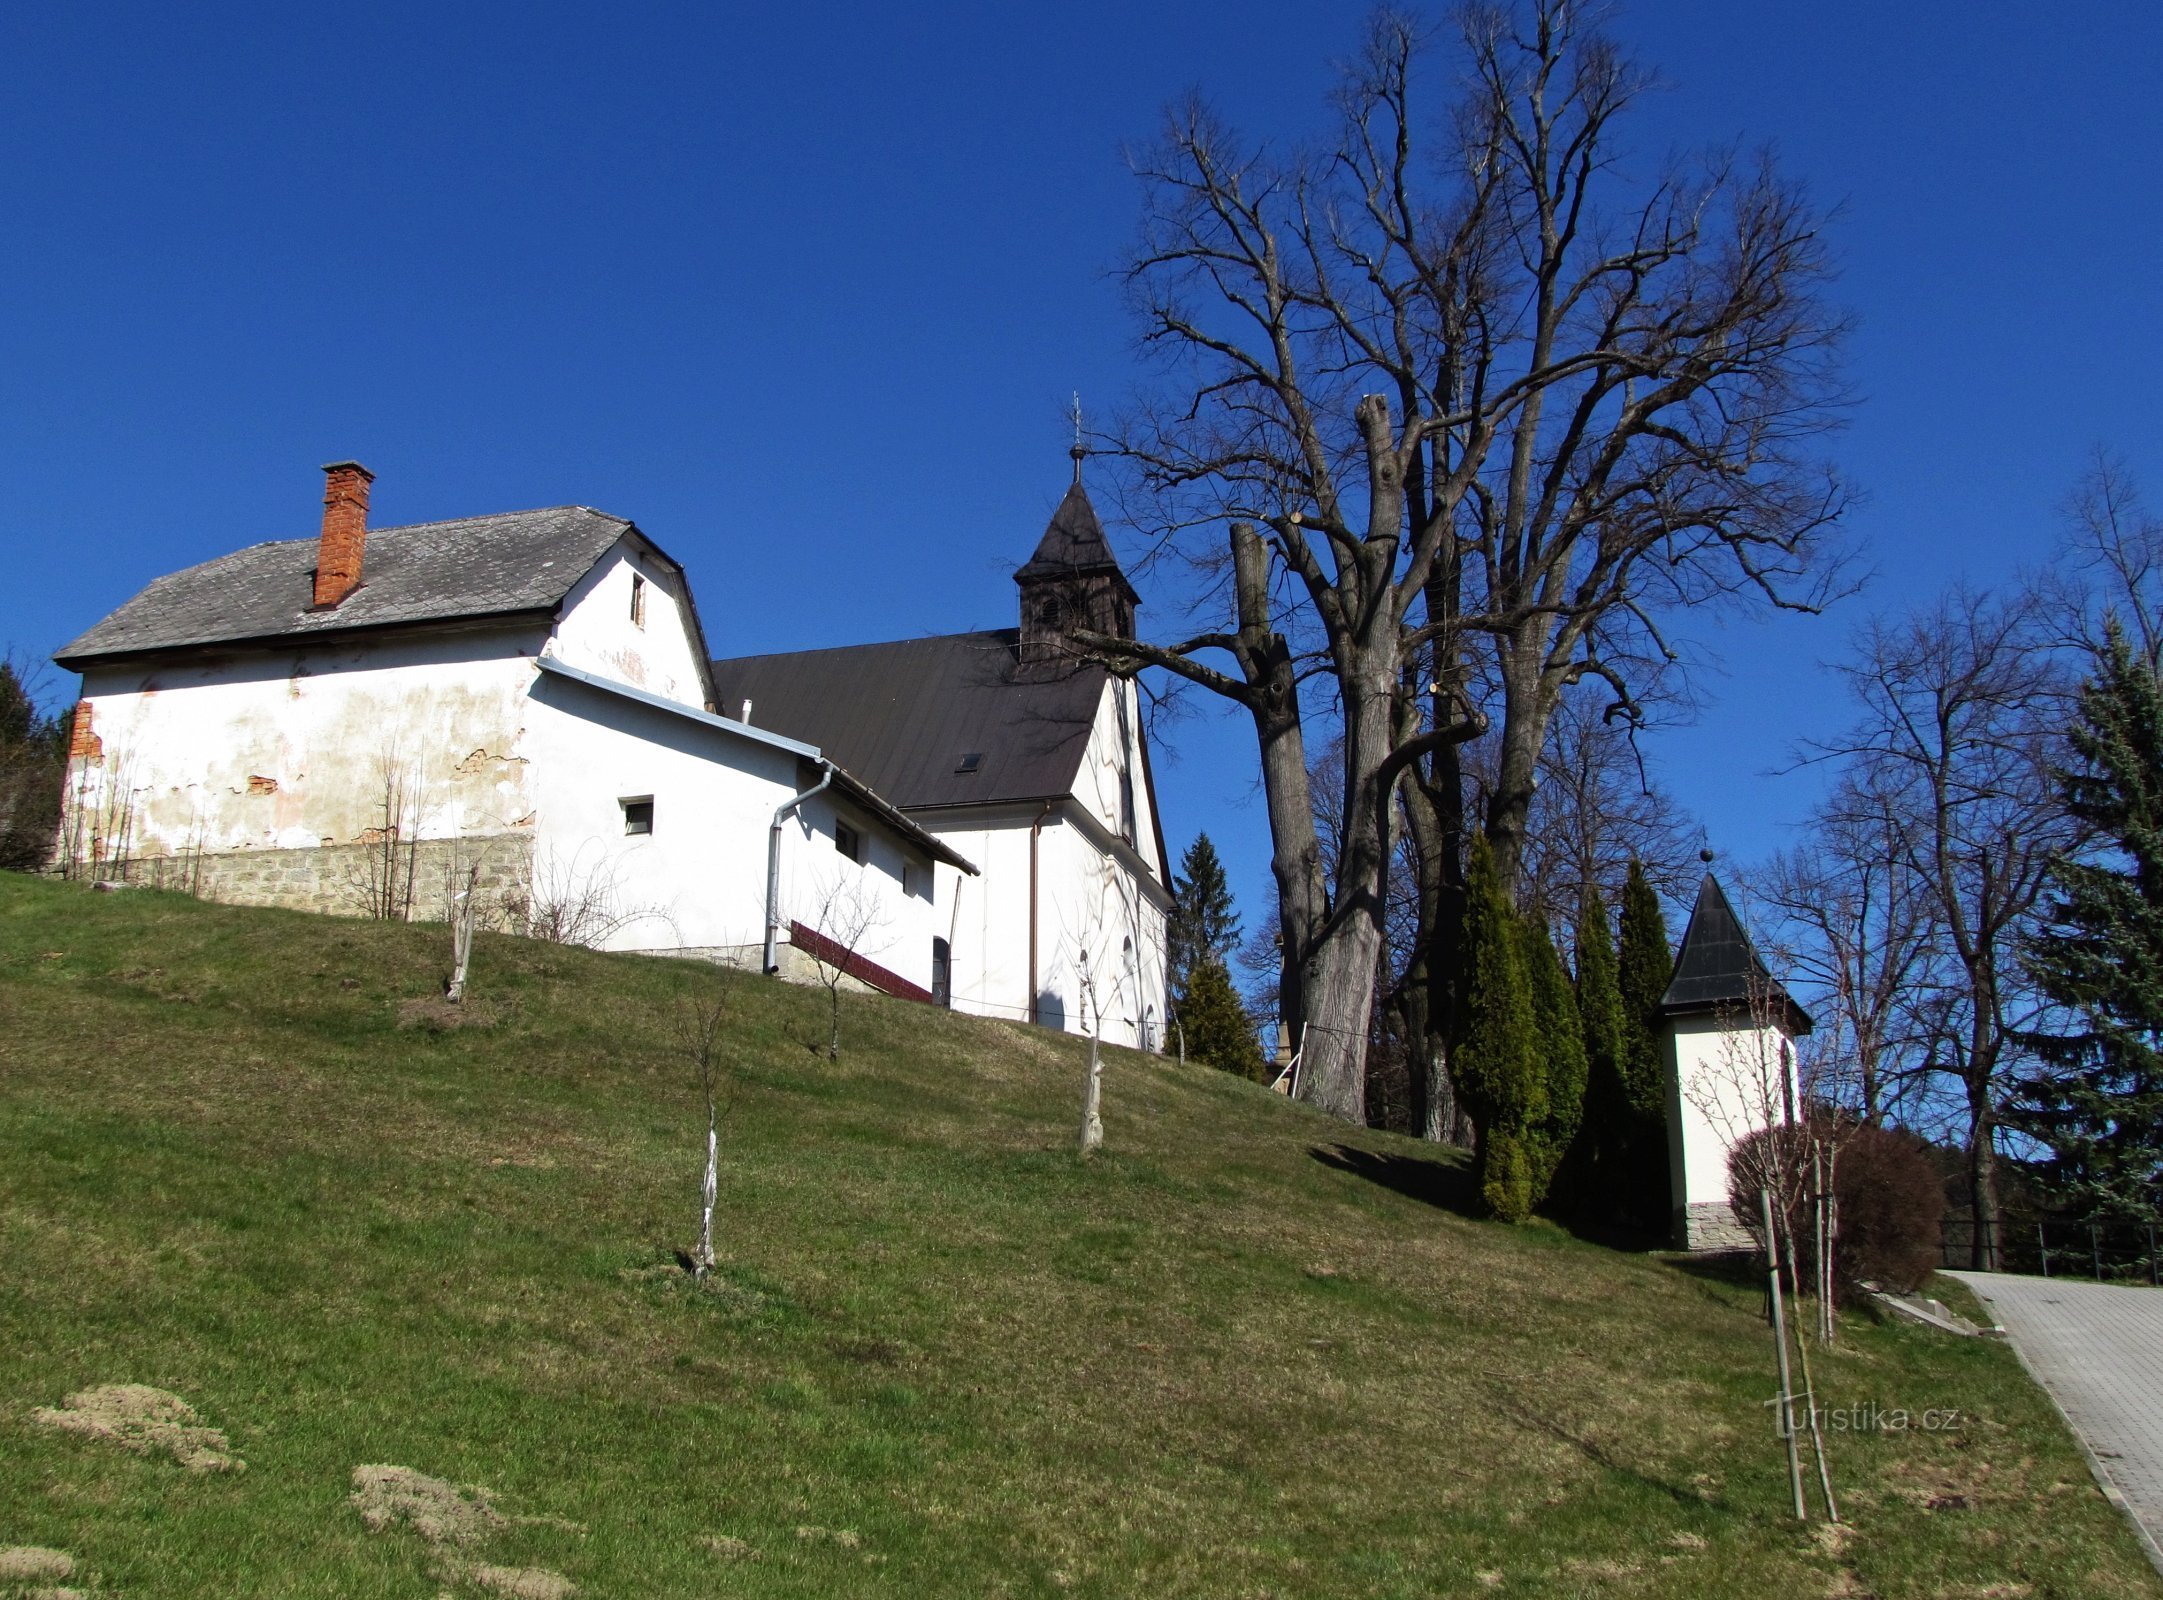 Zděchov - ngọn đồi có Nhà thờ Chúa Biến hình